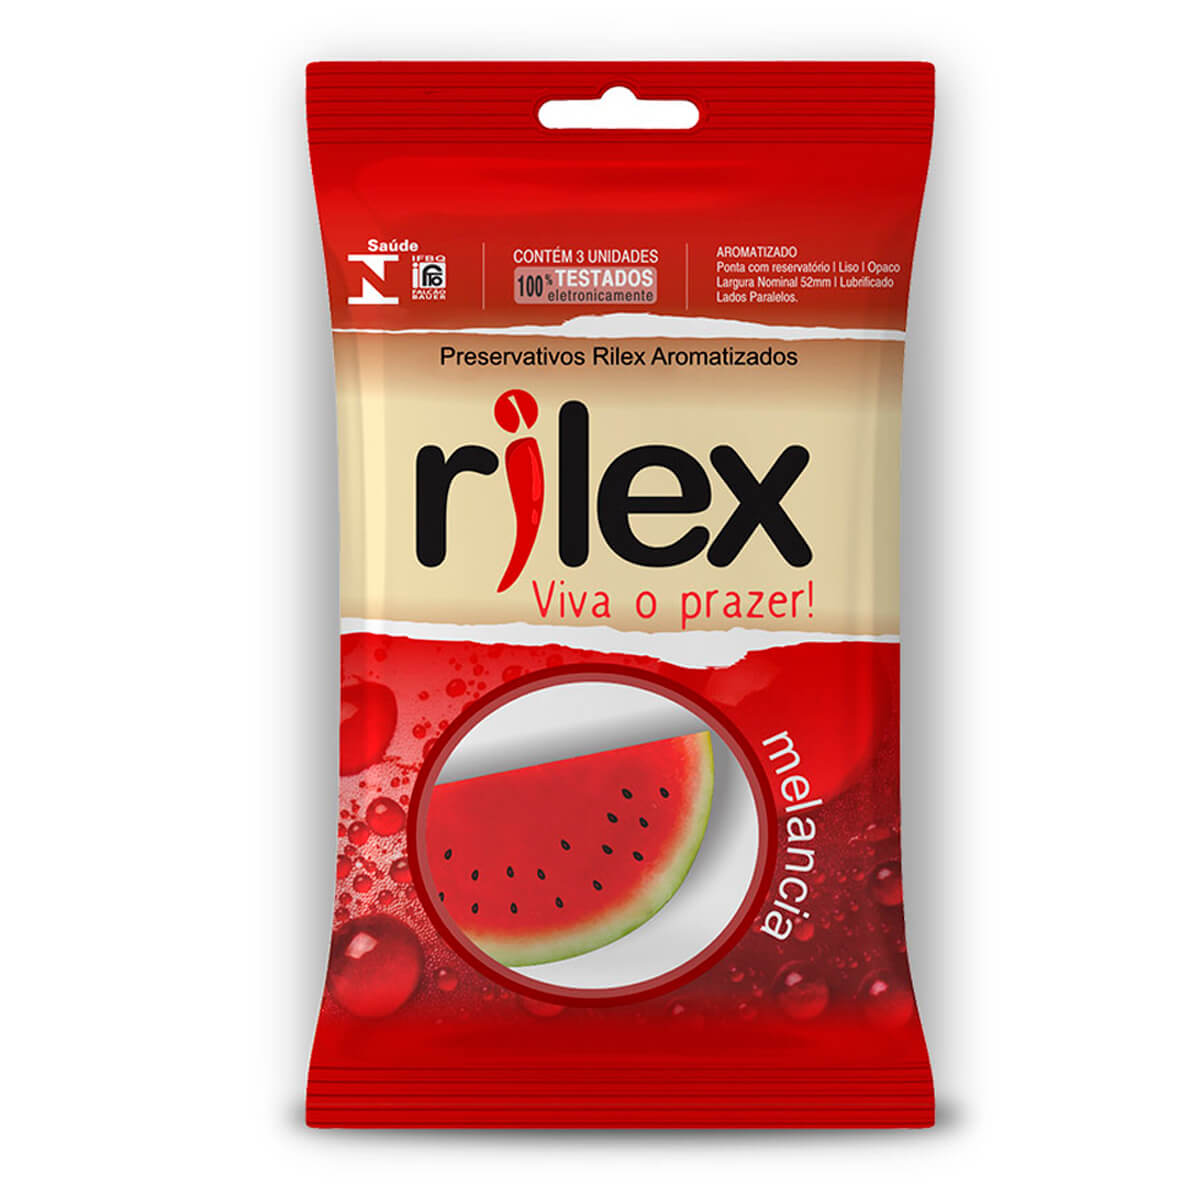 Preservativo Lubrificado com Aroma de Melancia 3 Unidades Rilex